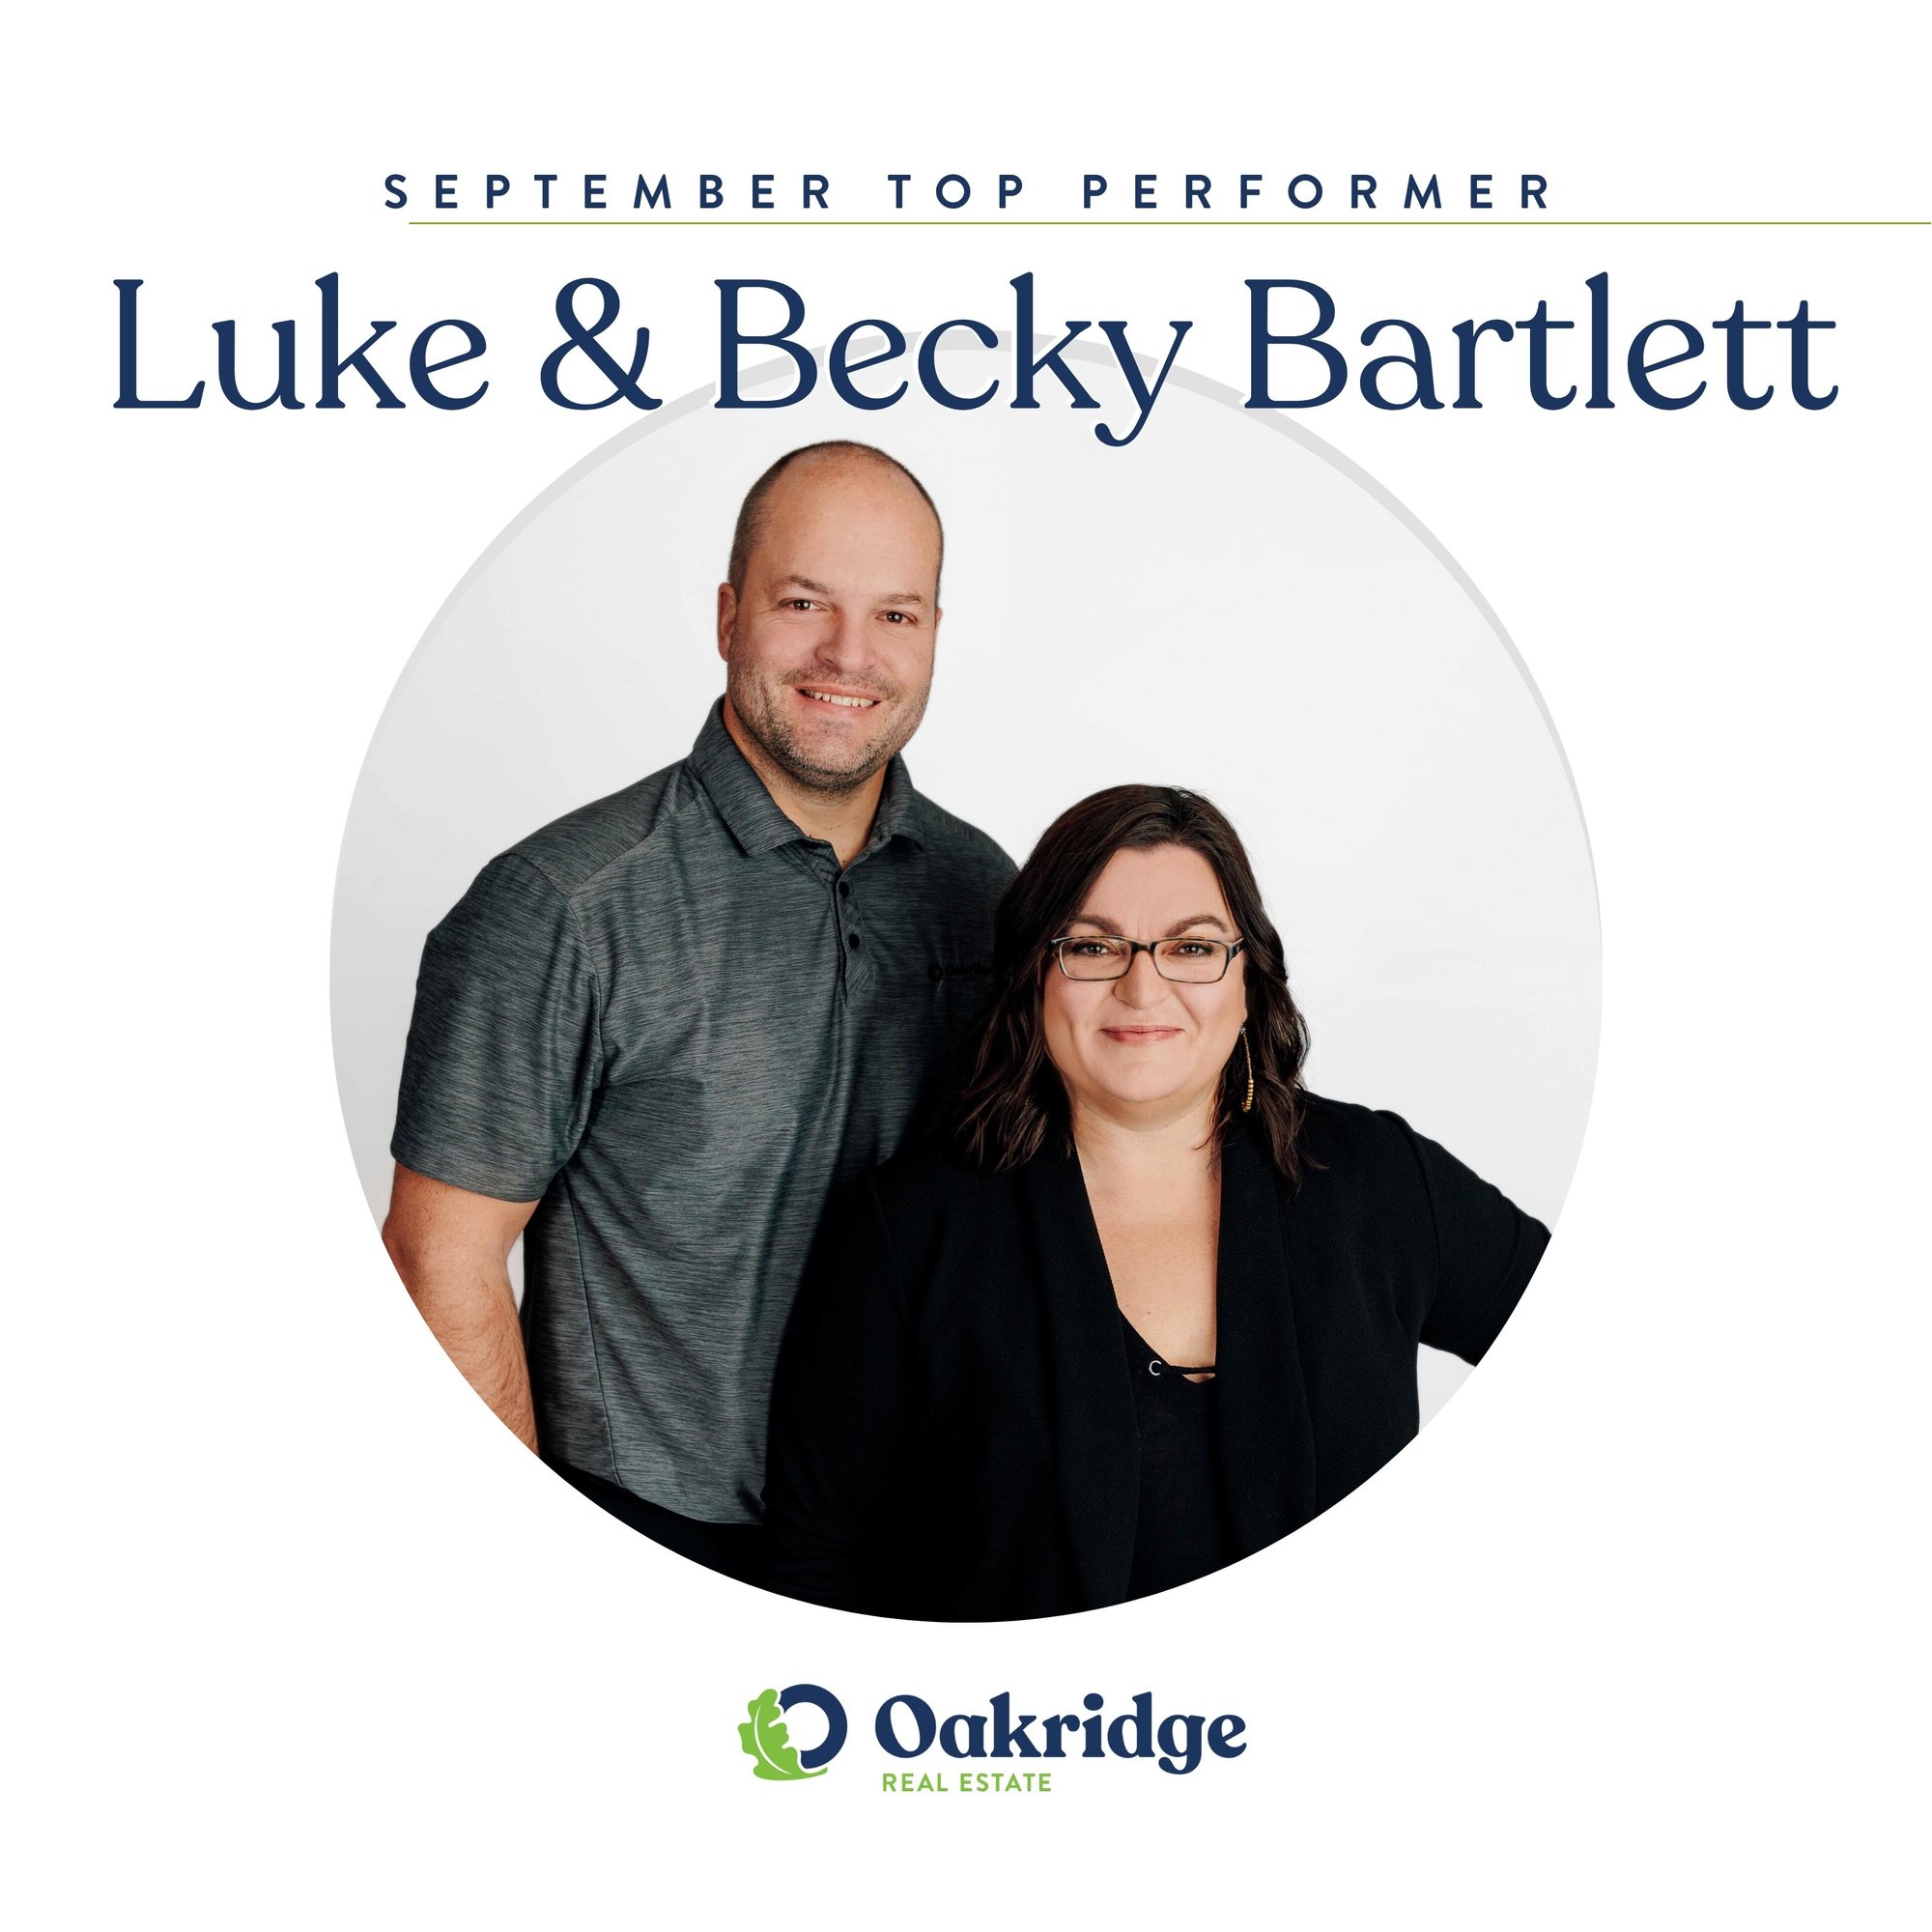 Luke & Becky Bartlett September Top Performer | Oakridge Real Estate